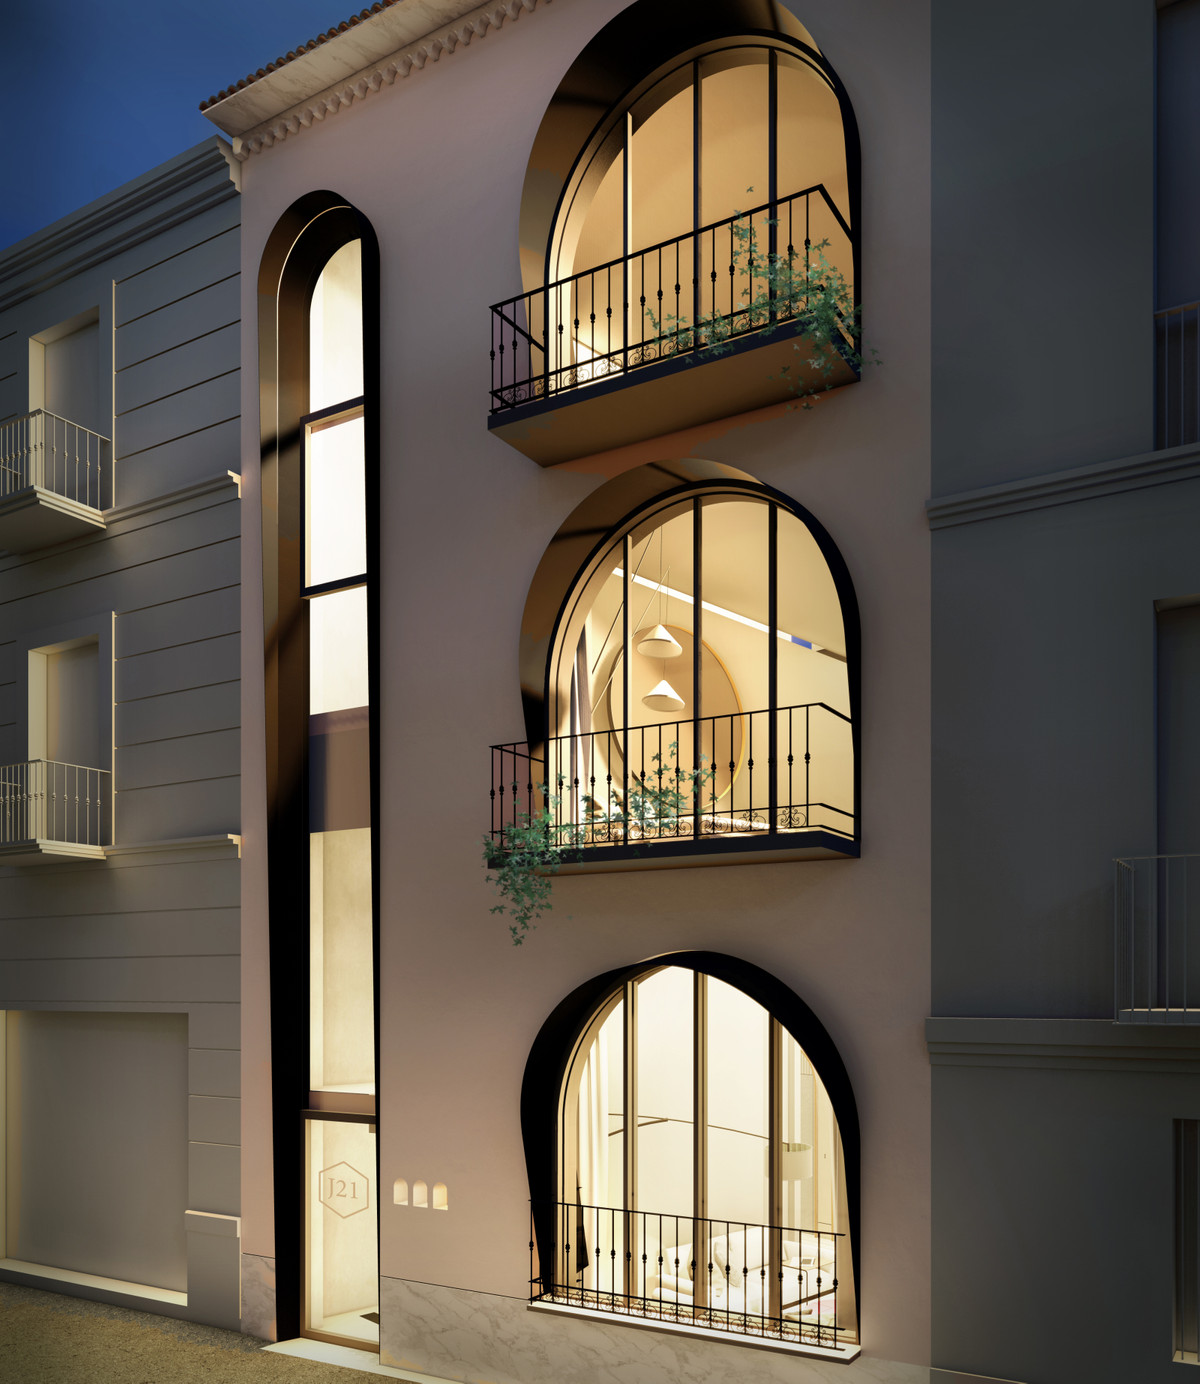 						Appartement  Rez-de-chaussée
													en vente 
																			 à Malaga Centro
					